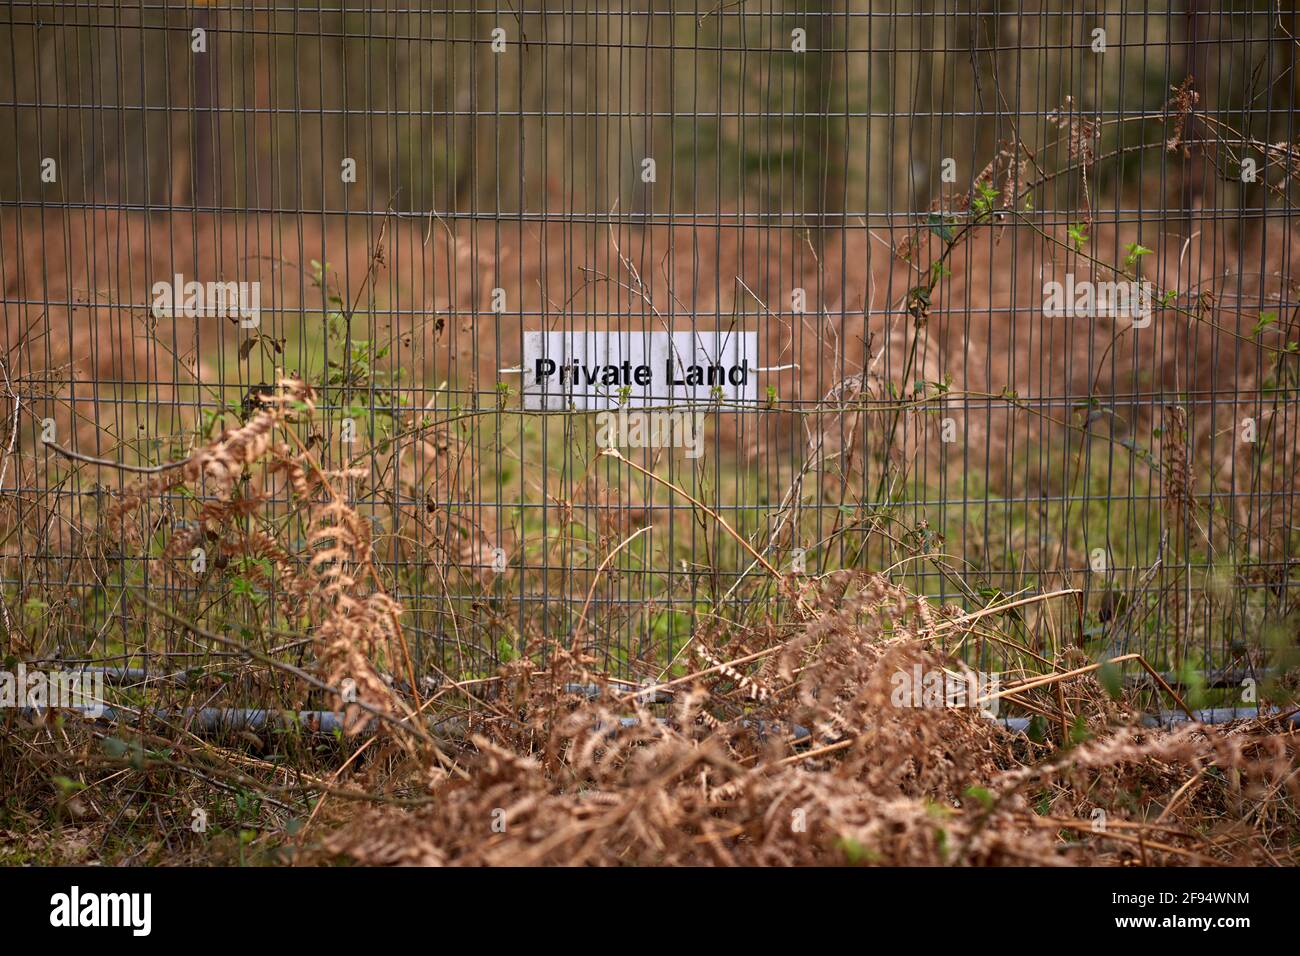 Terrain privé pas de panneaux d'entrée, pas de panneau de droit de passage public au Royaume-Uni Banque D'Images